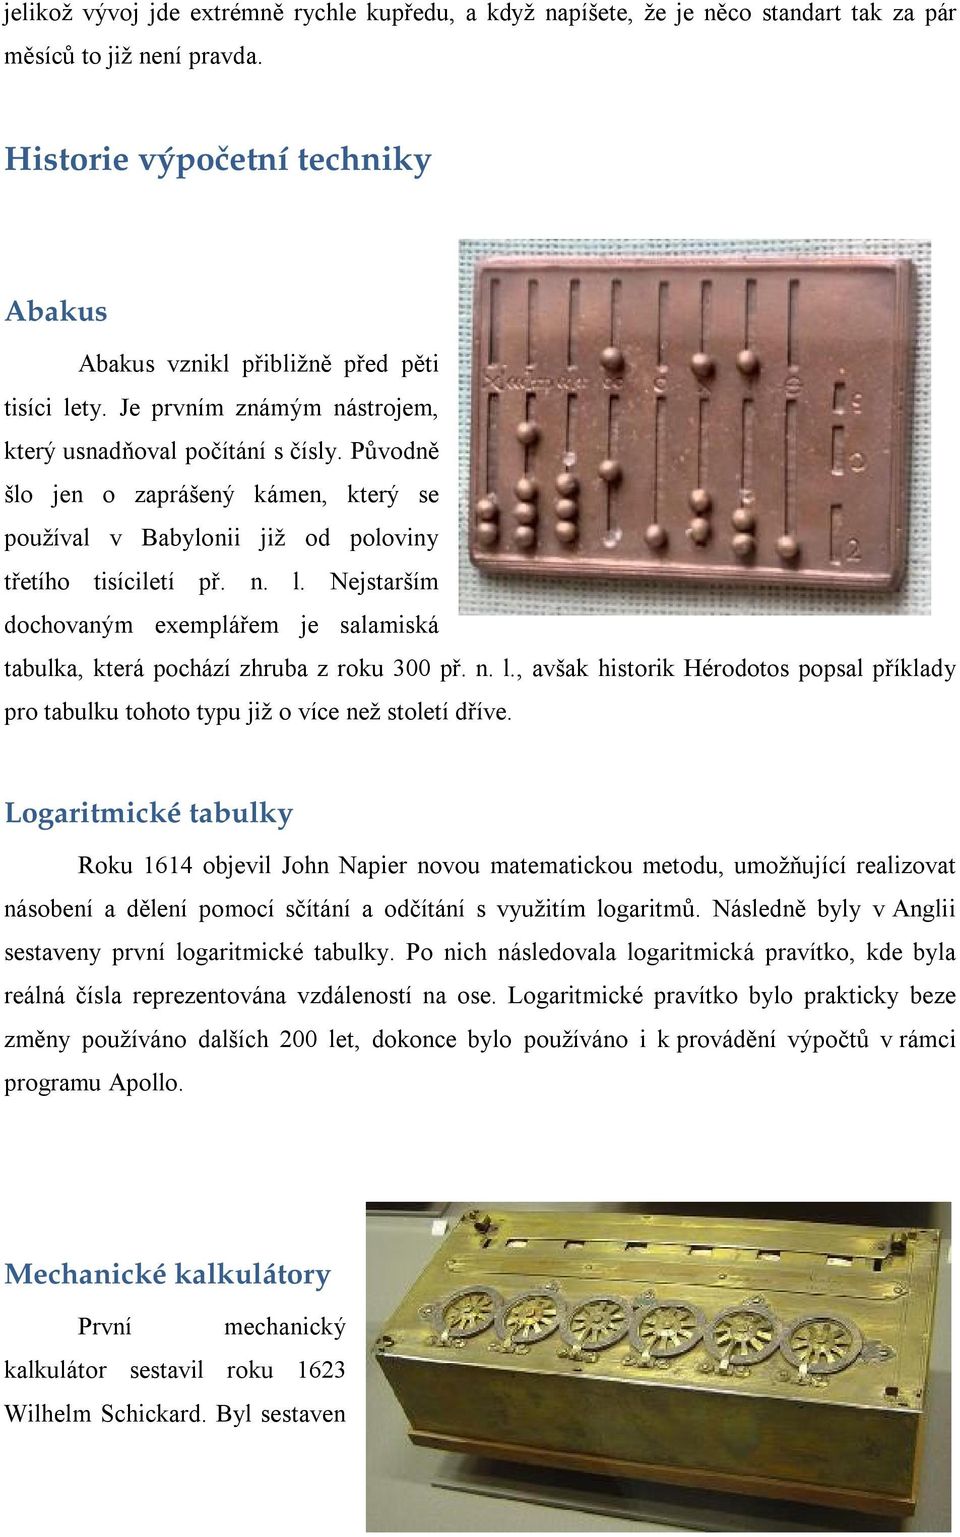 Nejstarším dochovaným exemplářem je salamiská tabulka, která pochází zhruba z roku 300 př. n. l., avšak historik Hérodotos popsal příklady pro tabulku tohoto typu již o více než století dříve.